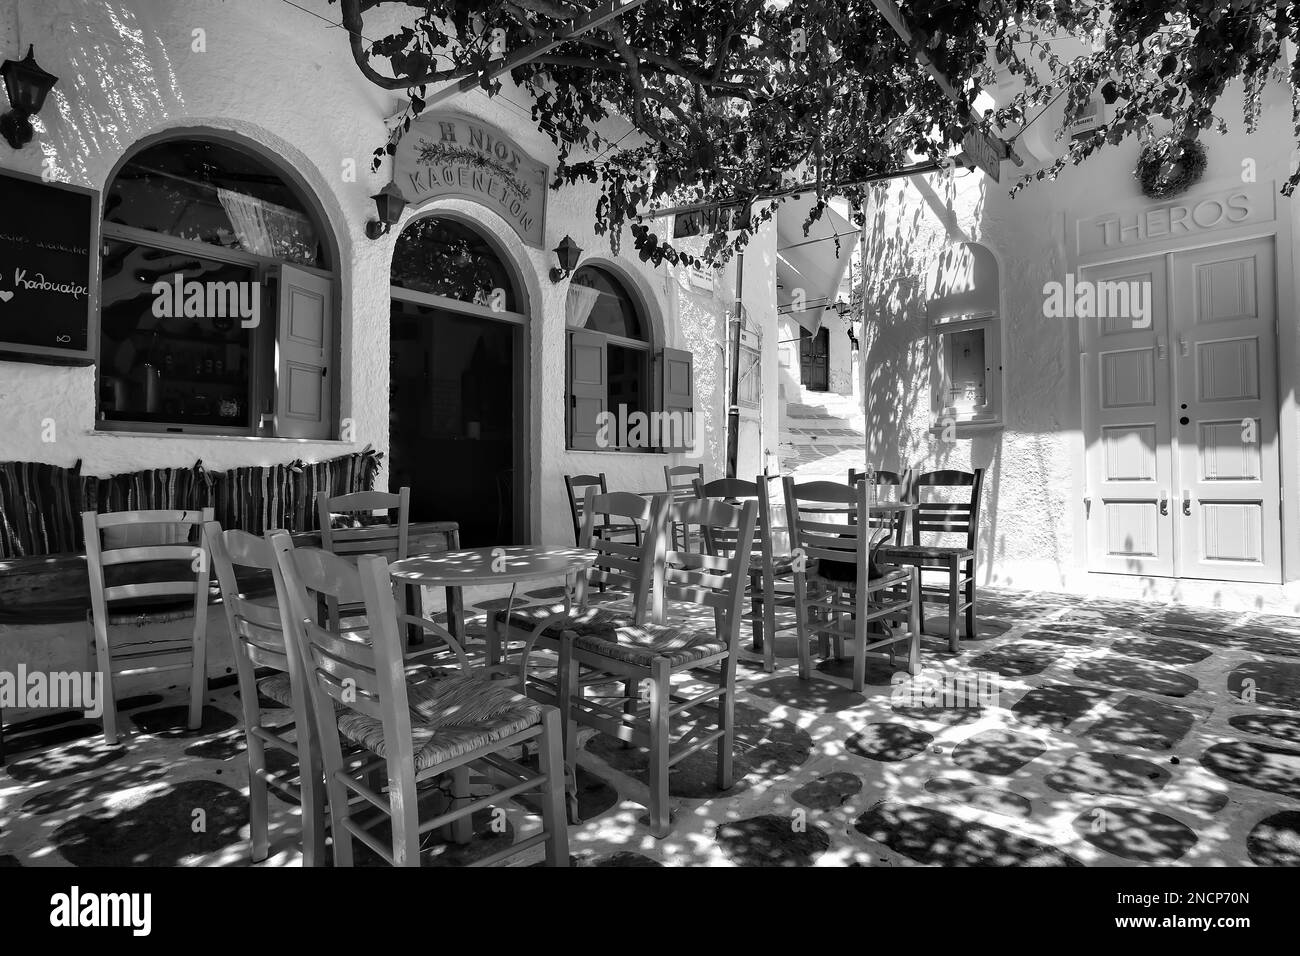 IOS, Griechenland - 2. Juni 2021 : Blick auf ein Bar-Restaurant mit malerischer Terrasse im Freien und farbenfrohen Stühlen in den iOS kykladen Griechenlands in Schwarz und Weiß Stockfoto